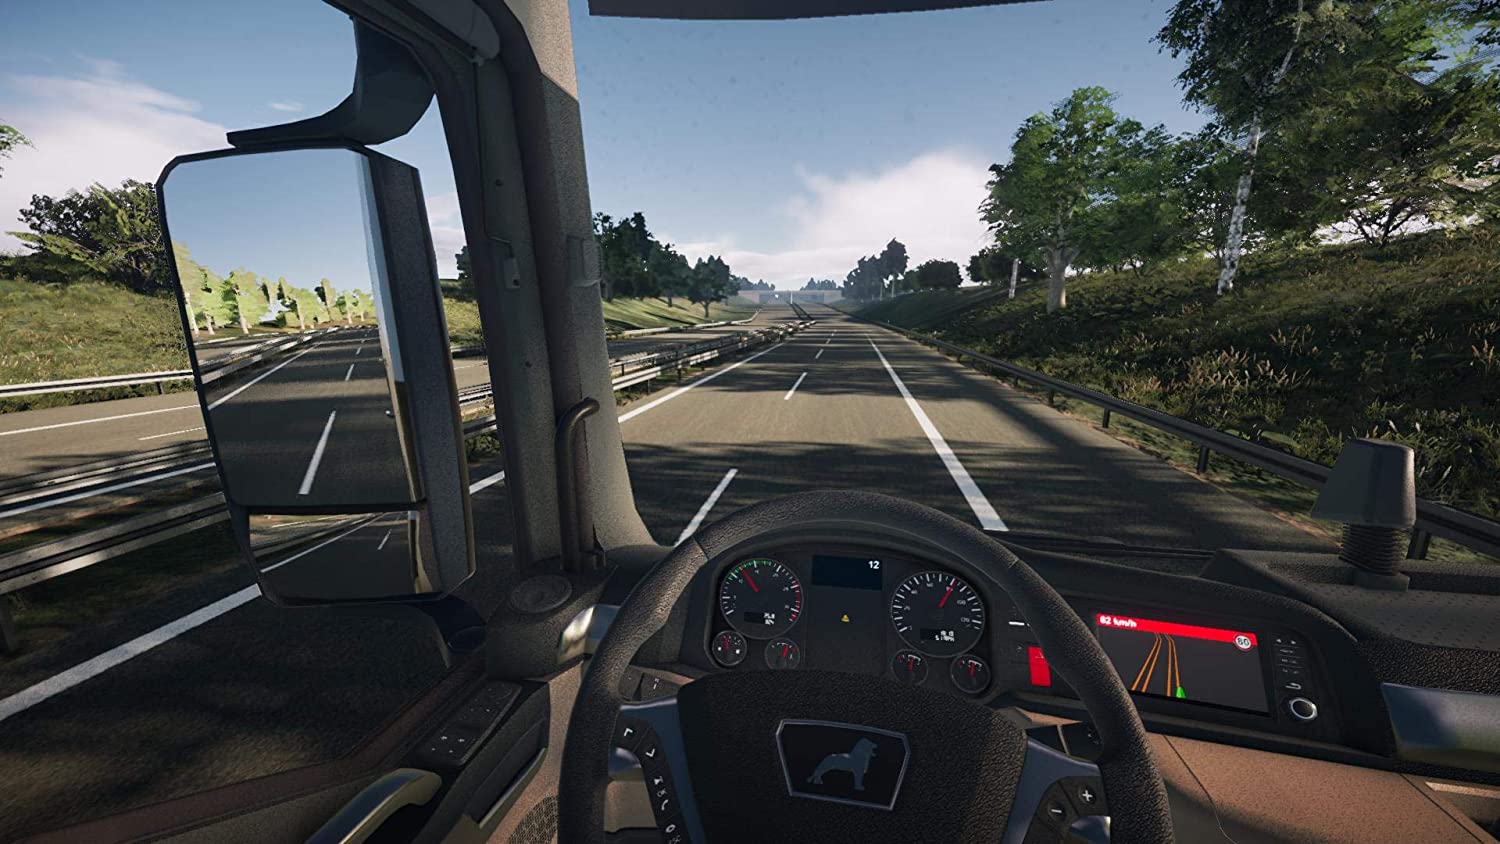 Играть про симуляторы. On the Road – Truck Simulation игра. Truck Simulator ps4. On the Road Truck Simulator для PLAYSTATION 4. Евро трак симулятор на ПС 4.